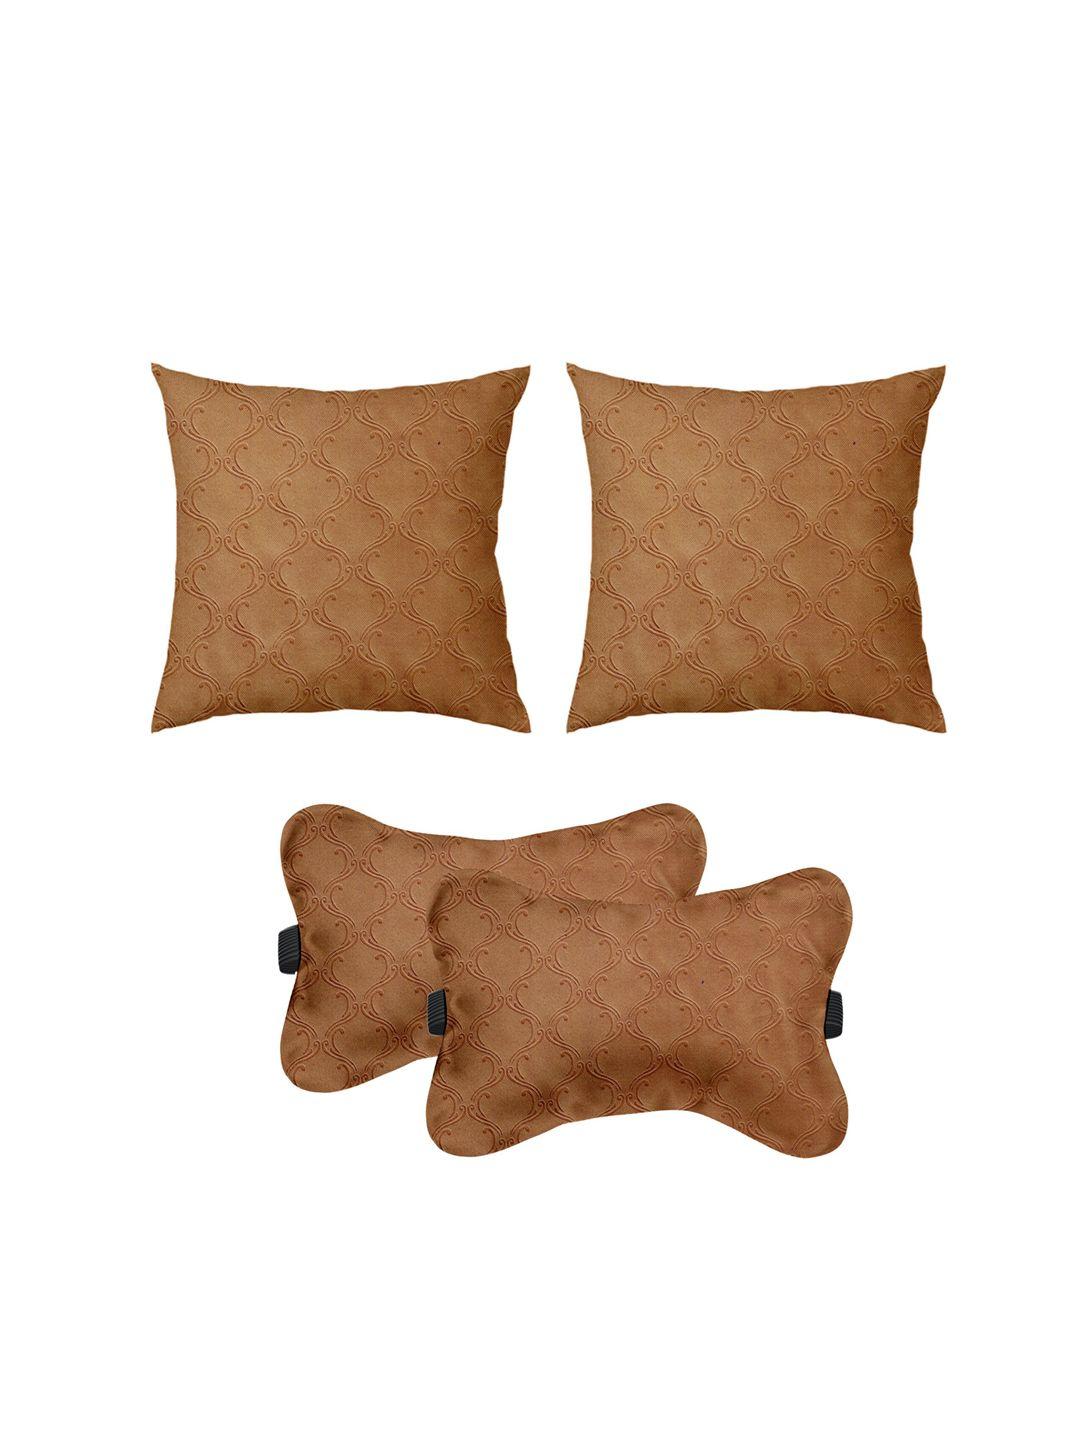 lushomes set of 4 car cushion pillows